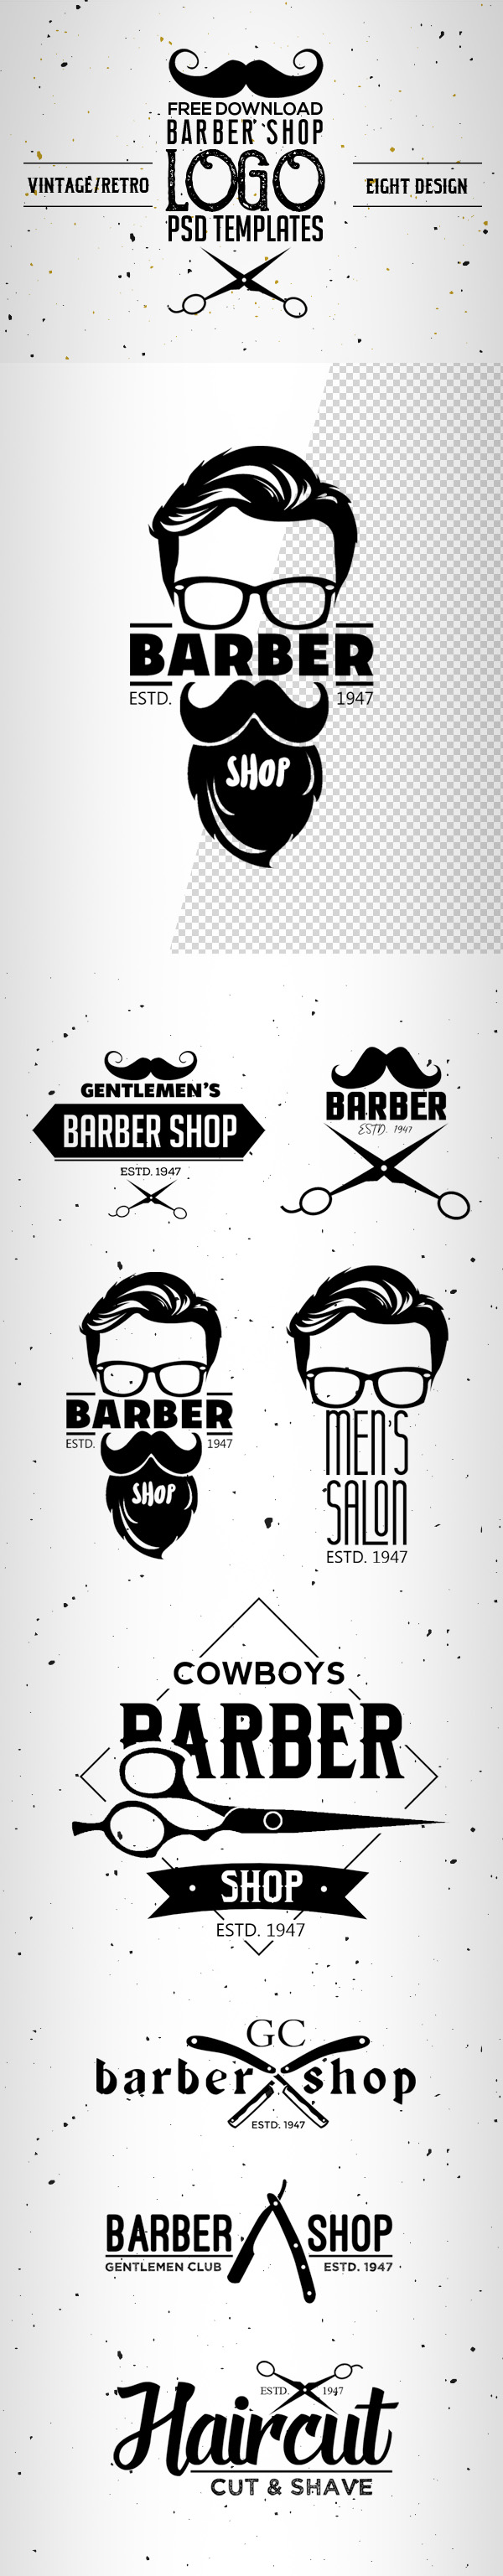 8 Free Vintage Barber Shop Logo Templates (PSD)